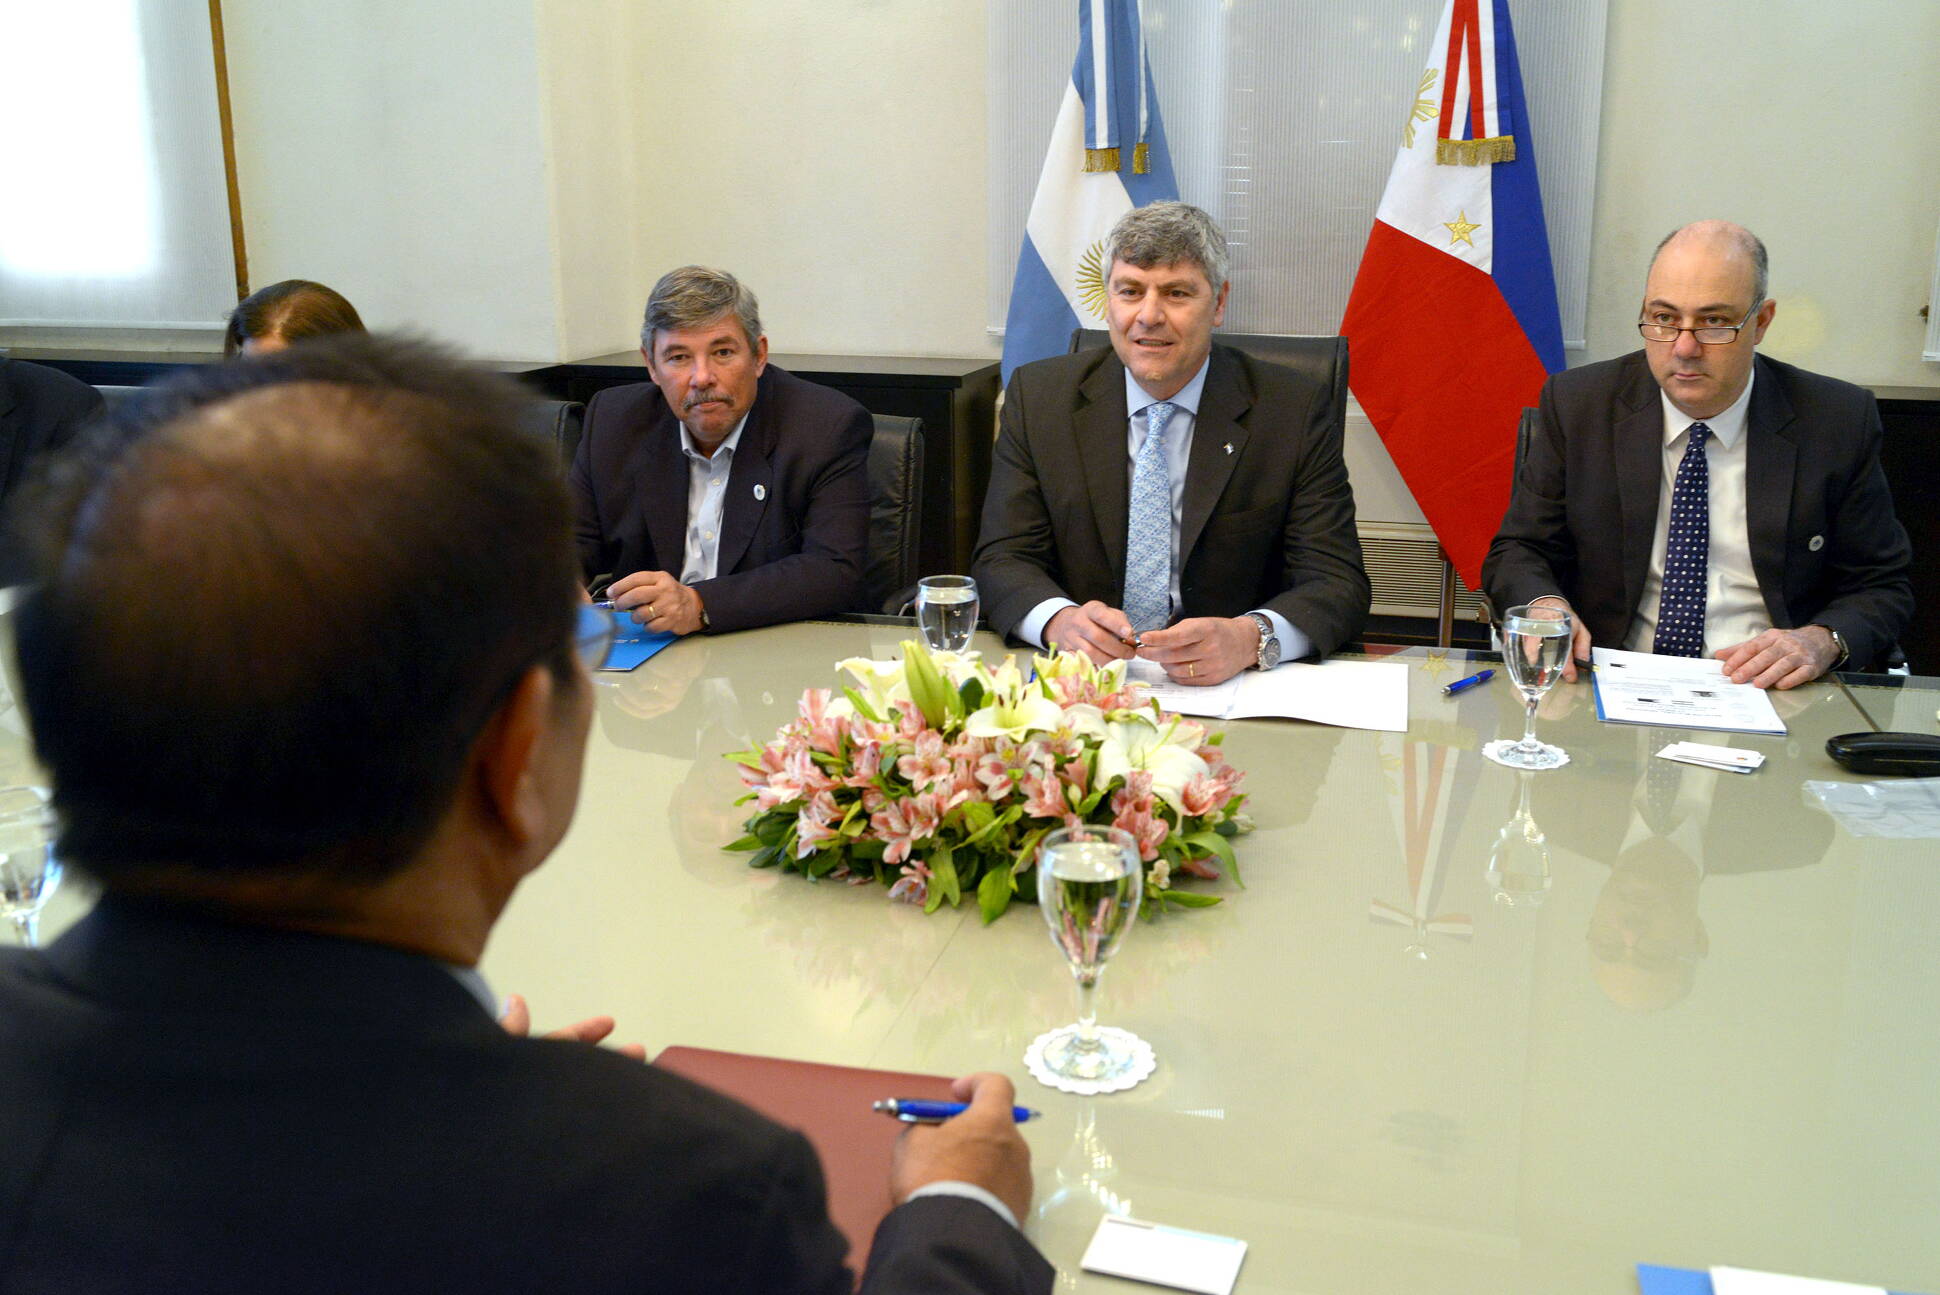 Filipinas mostró interés en adquirir tecnología argentina para producción agrícola